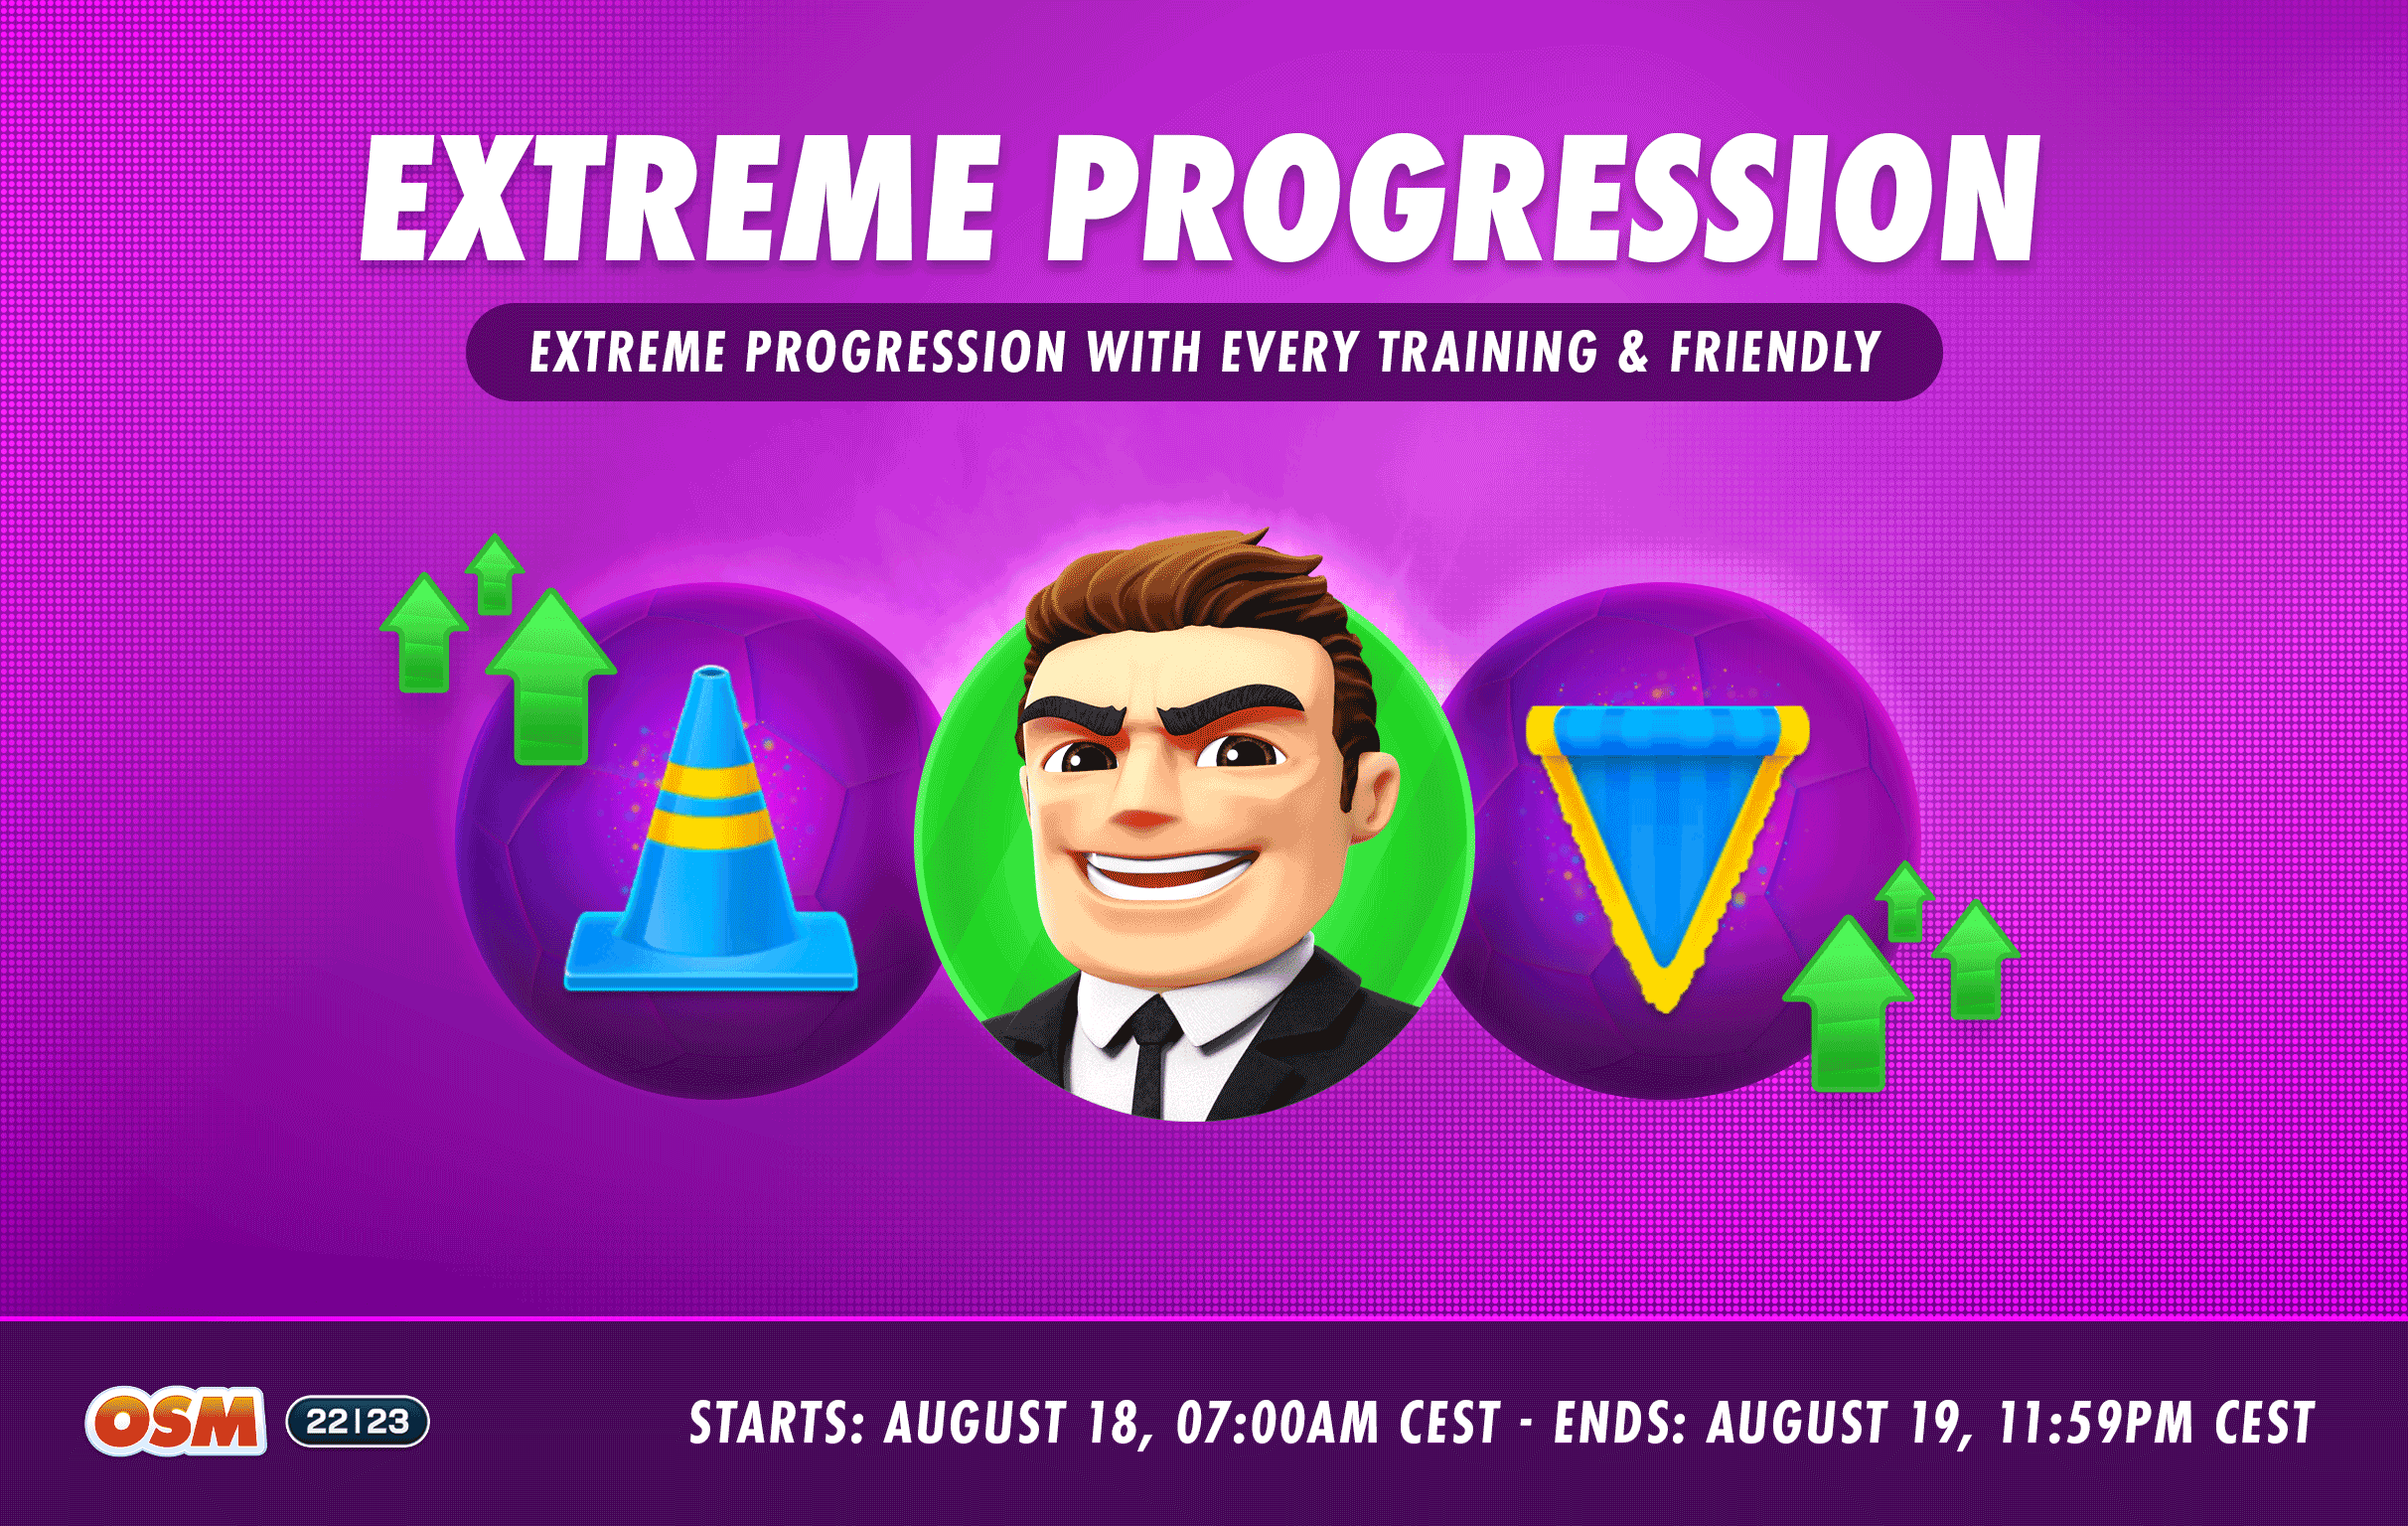 Forum_Extreme-Progression_REDDIT.png